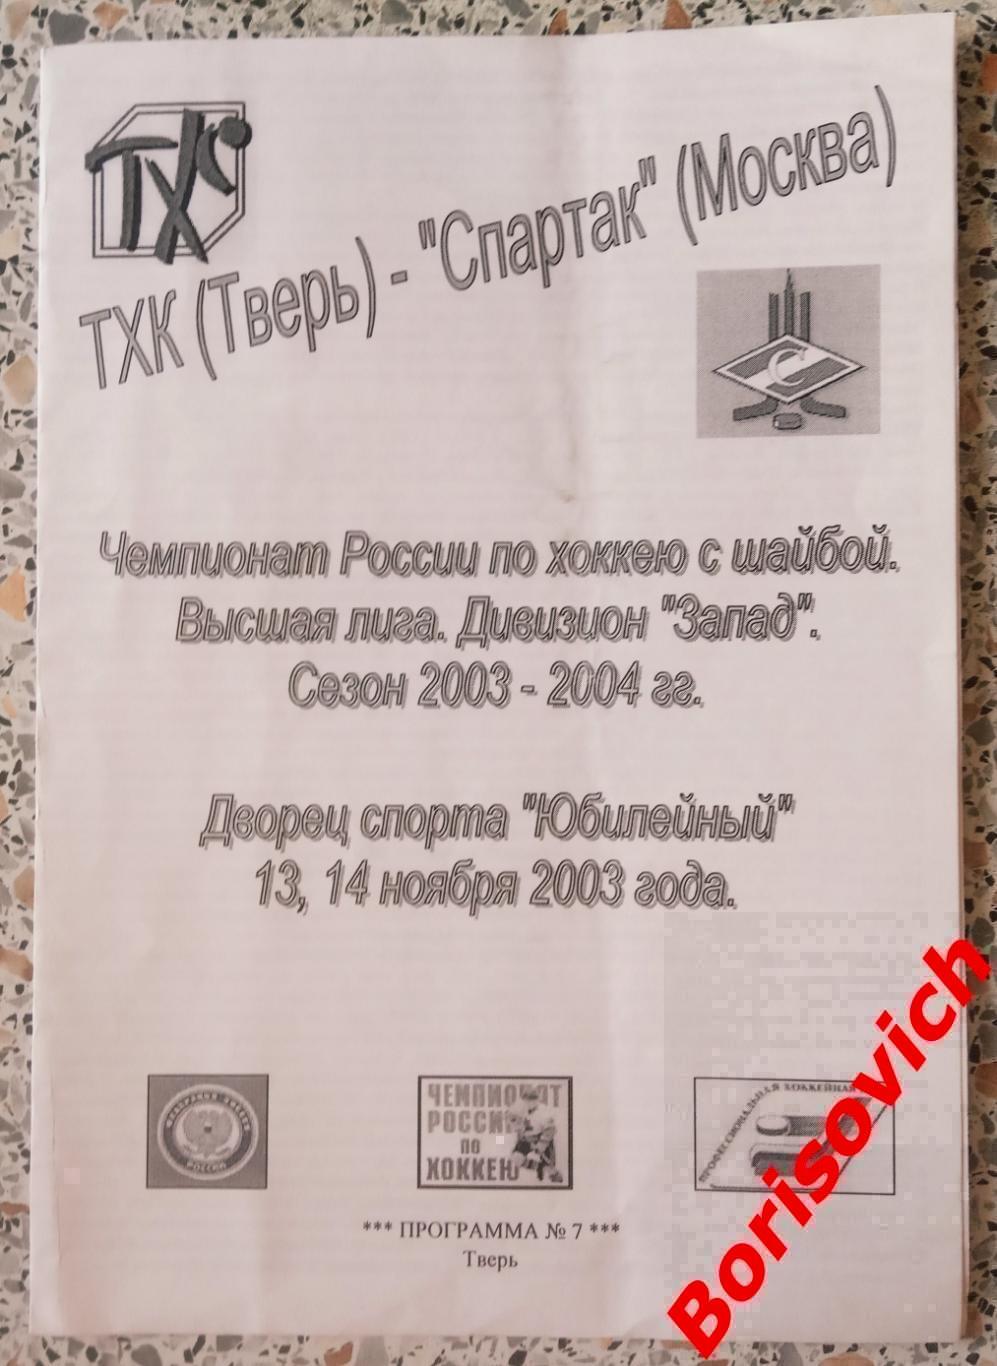 ТХК Тверь - Спартак Москва 13,14-11-2003